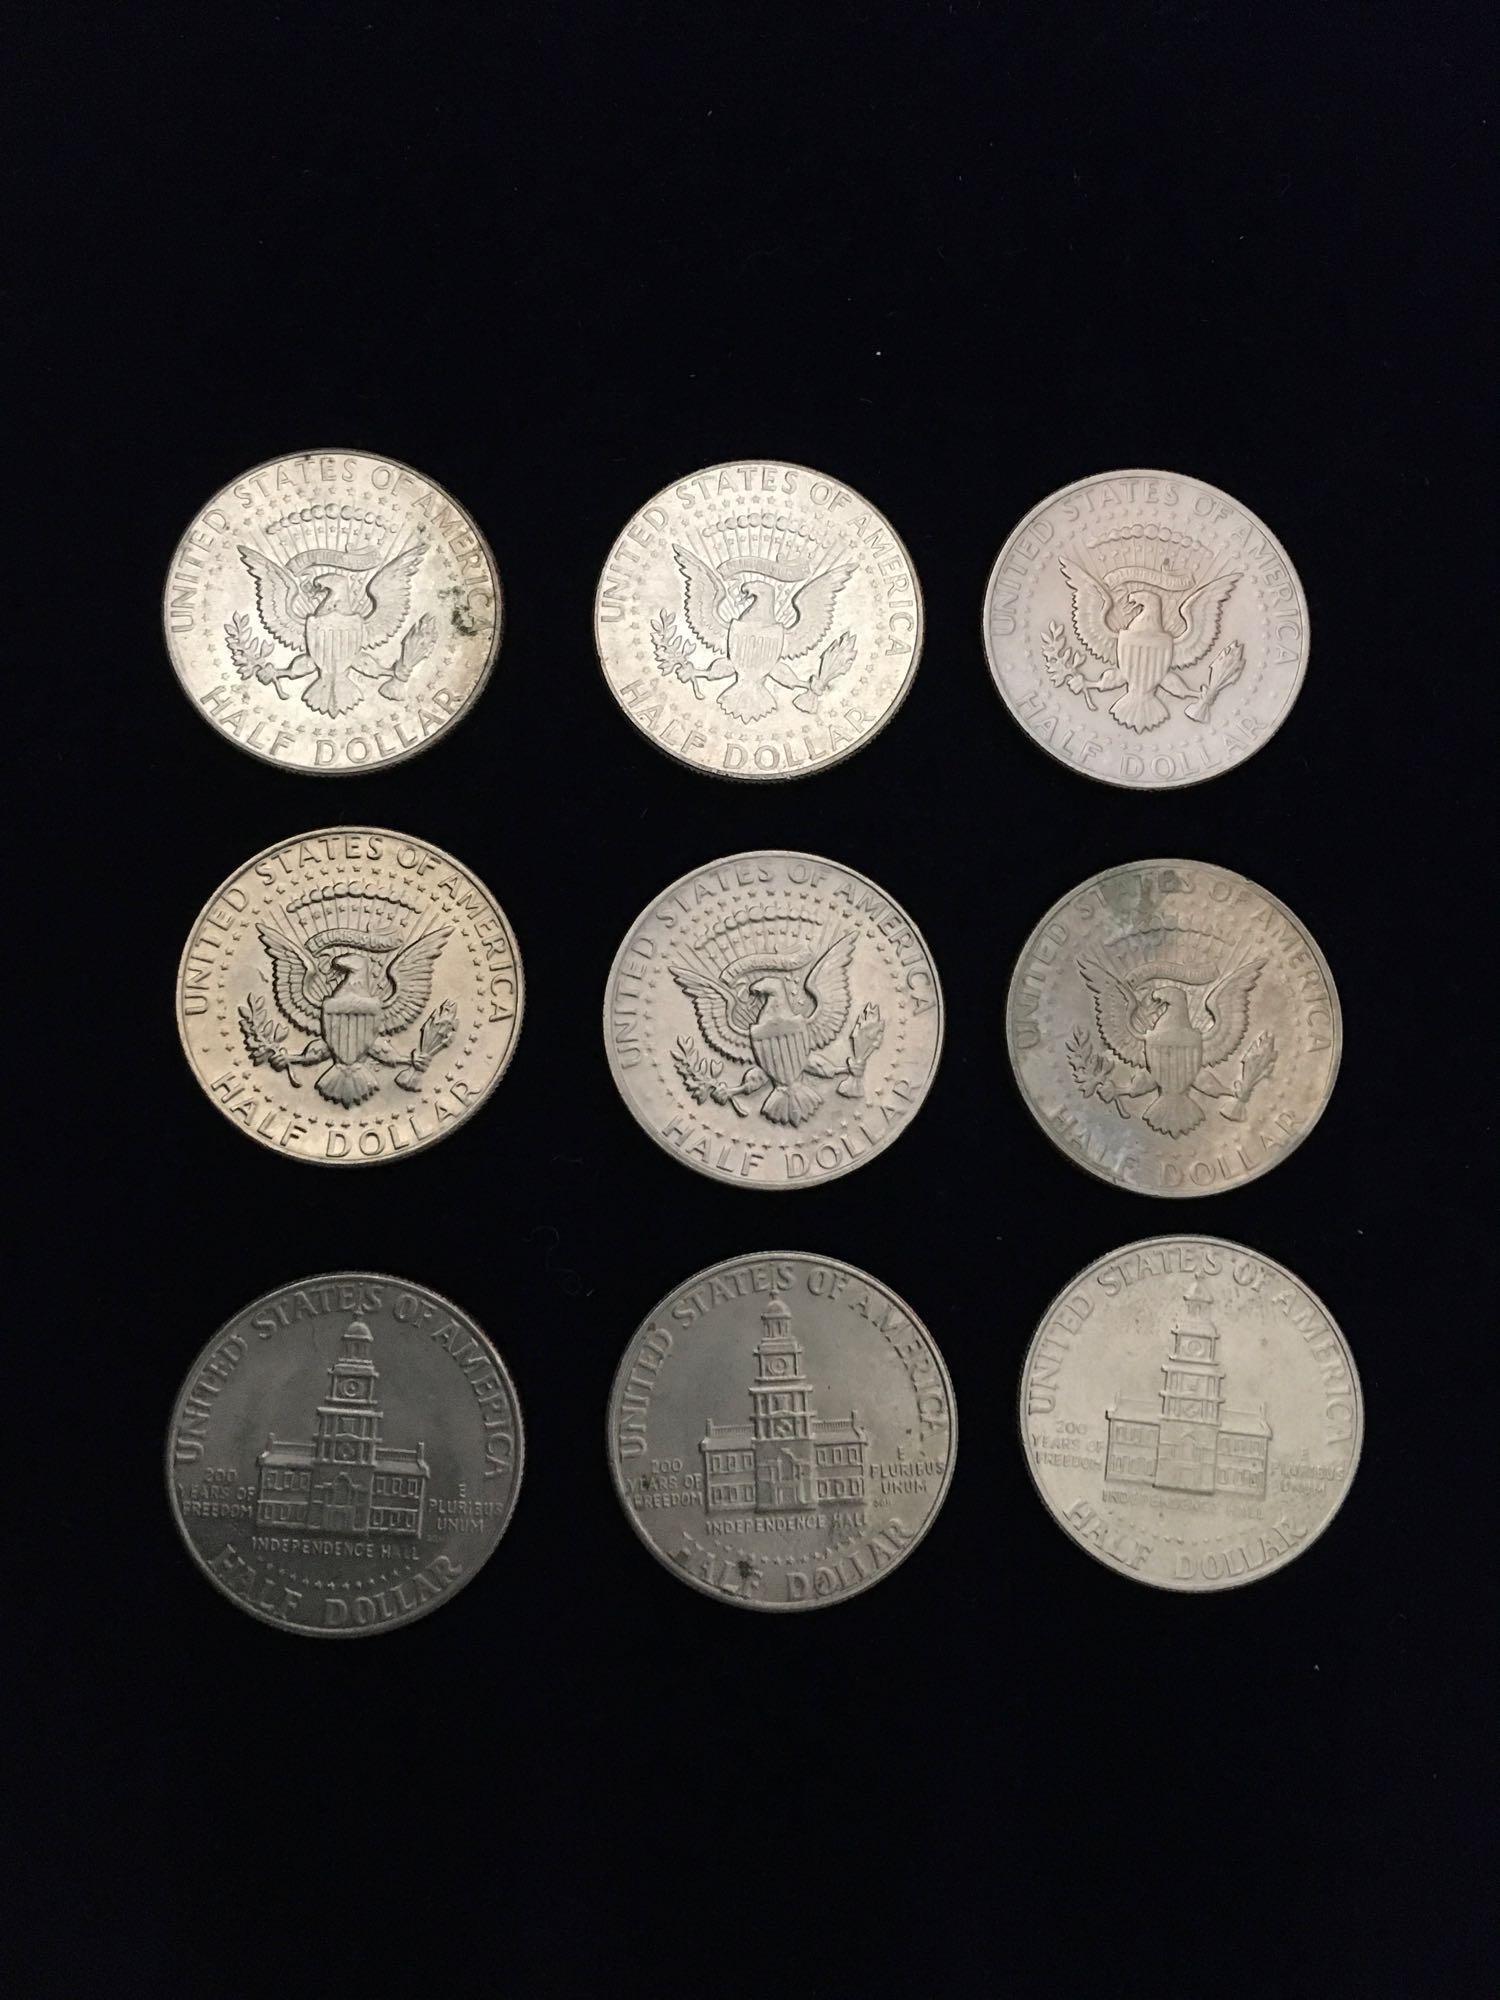 Kennedy Half Dollars 1)1968 1)1967 3)1972 3)1976 1)1981